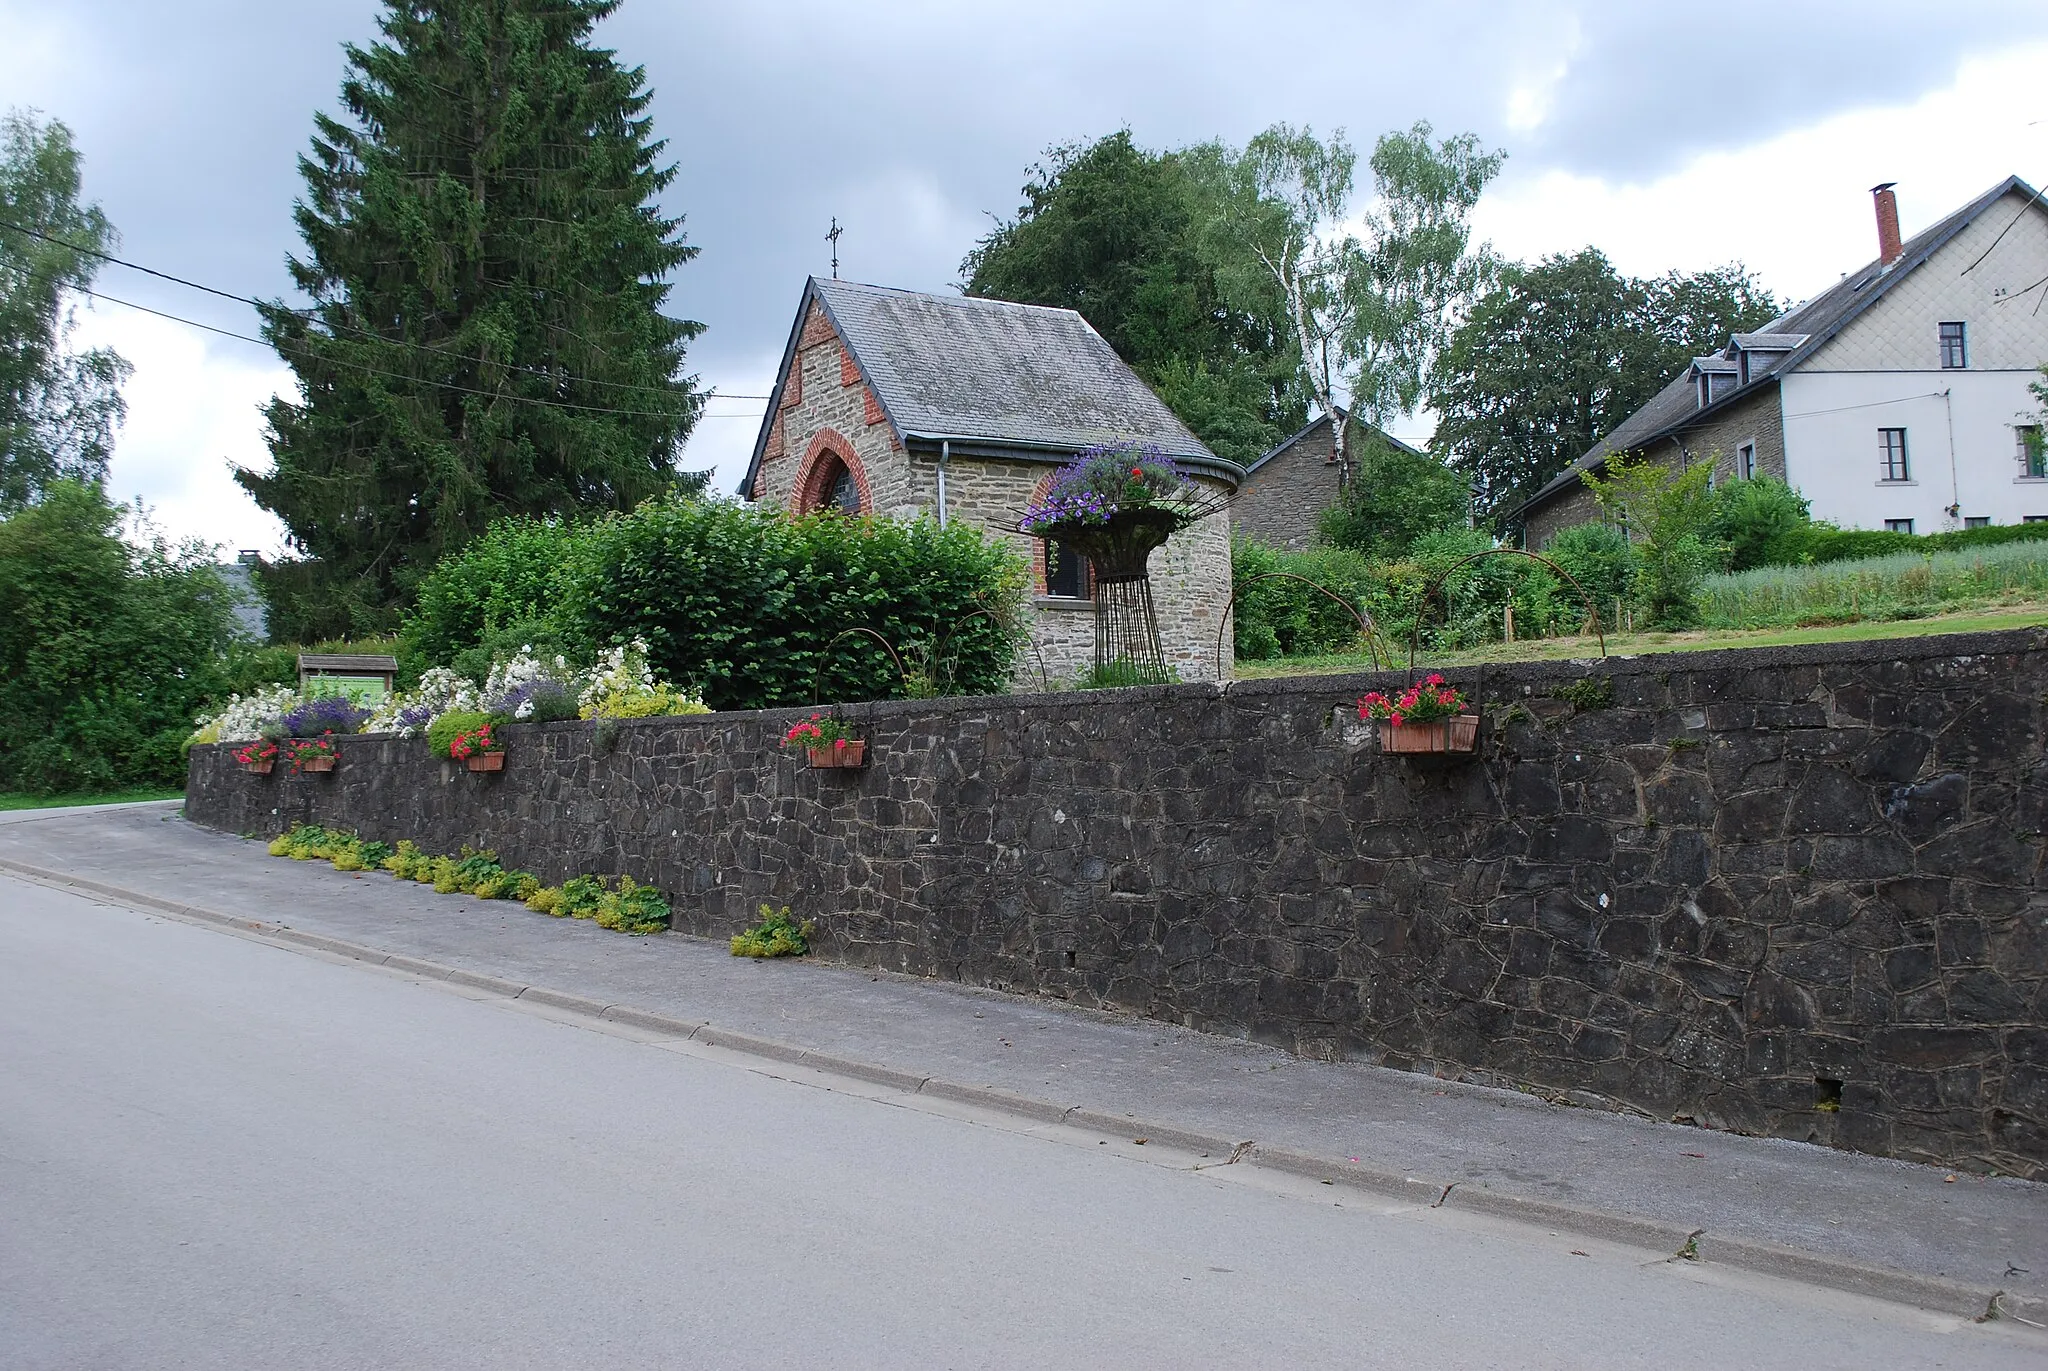 Photo showing: Vue du village de Flohimont dans la commune de Libramont-Chevigny (province de Luxembourg, en Belgique).